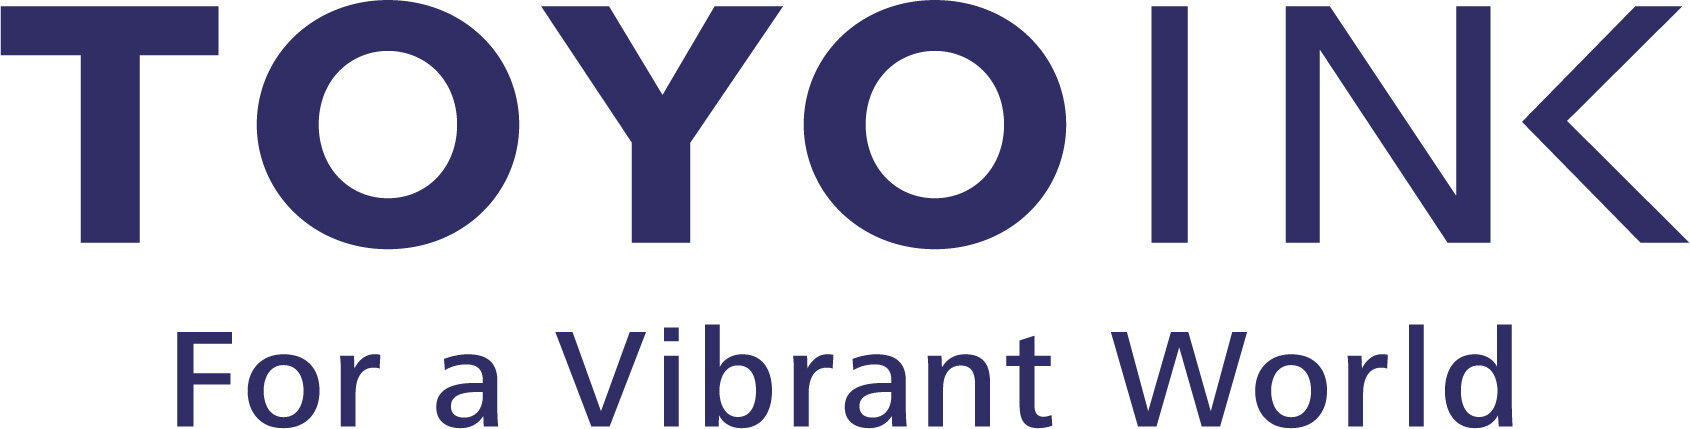 ToyoInk_Logo.jpg